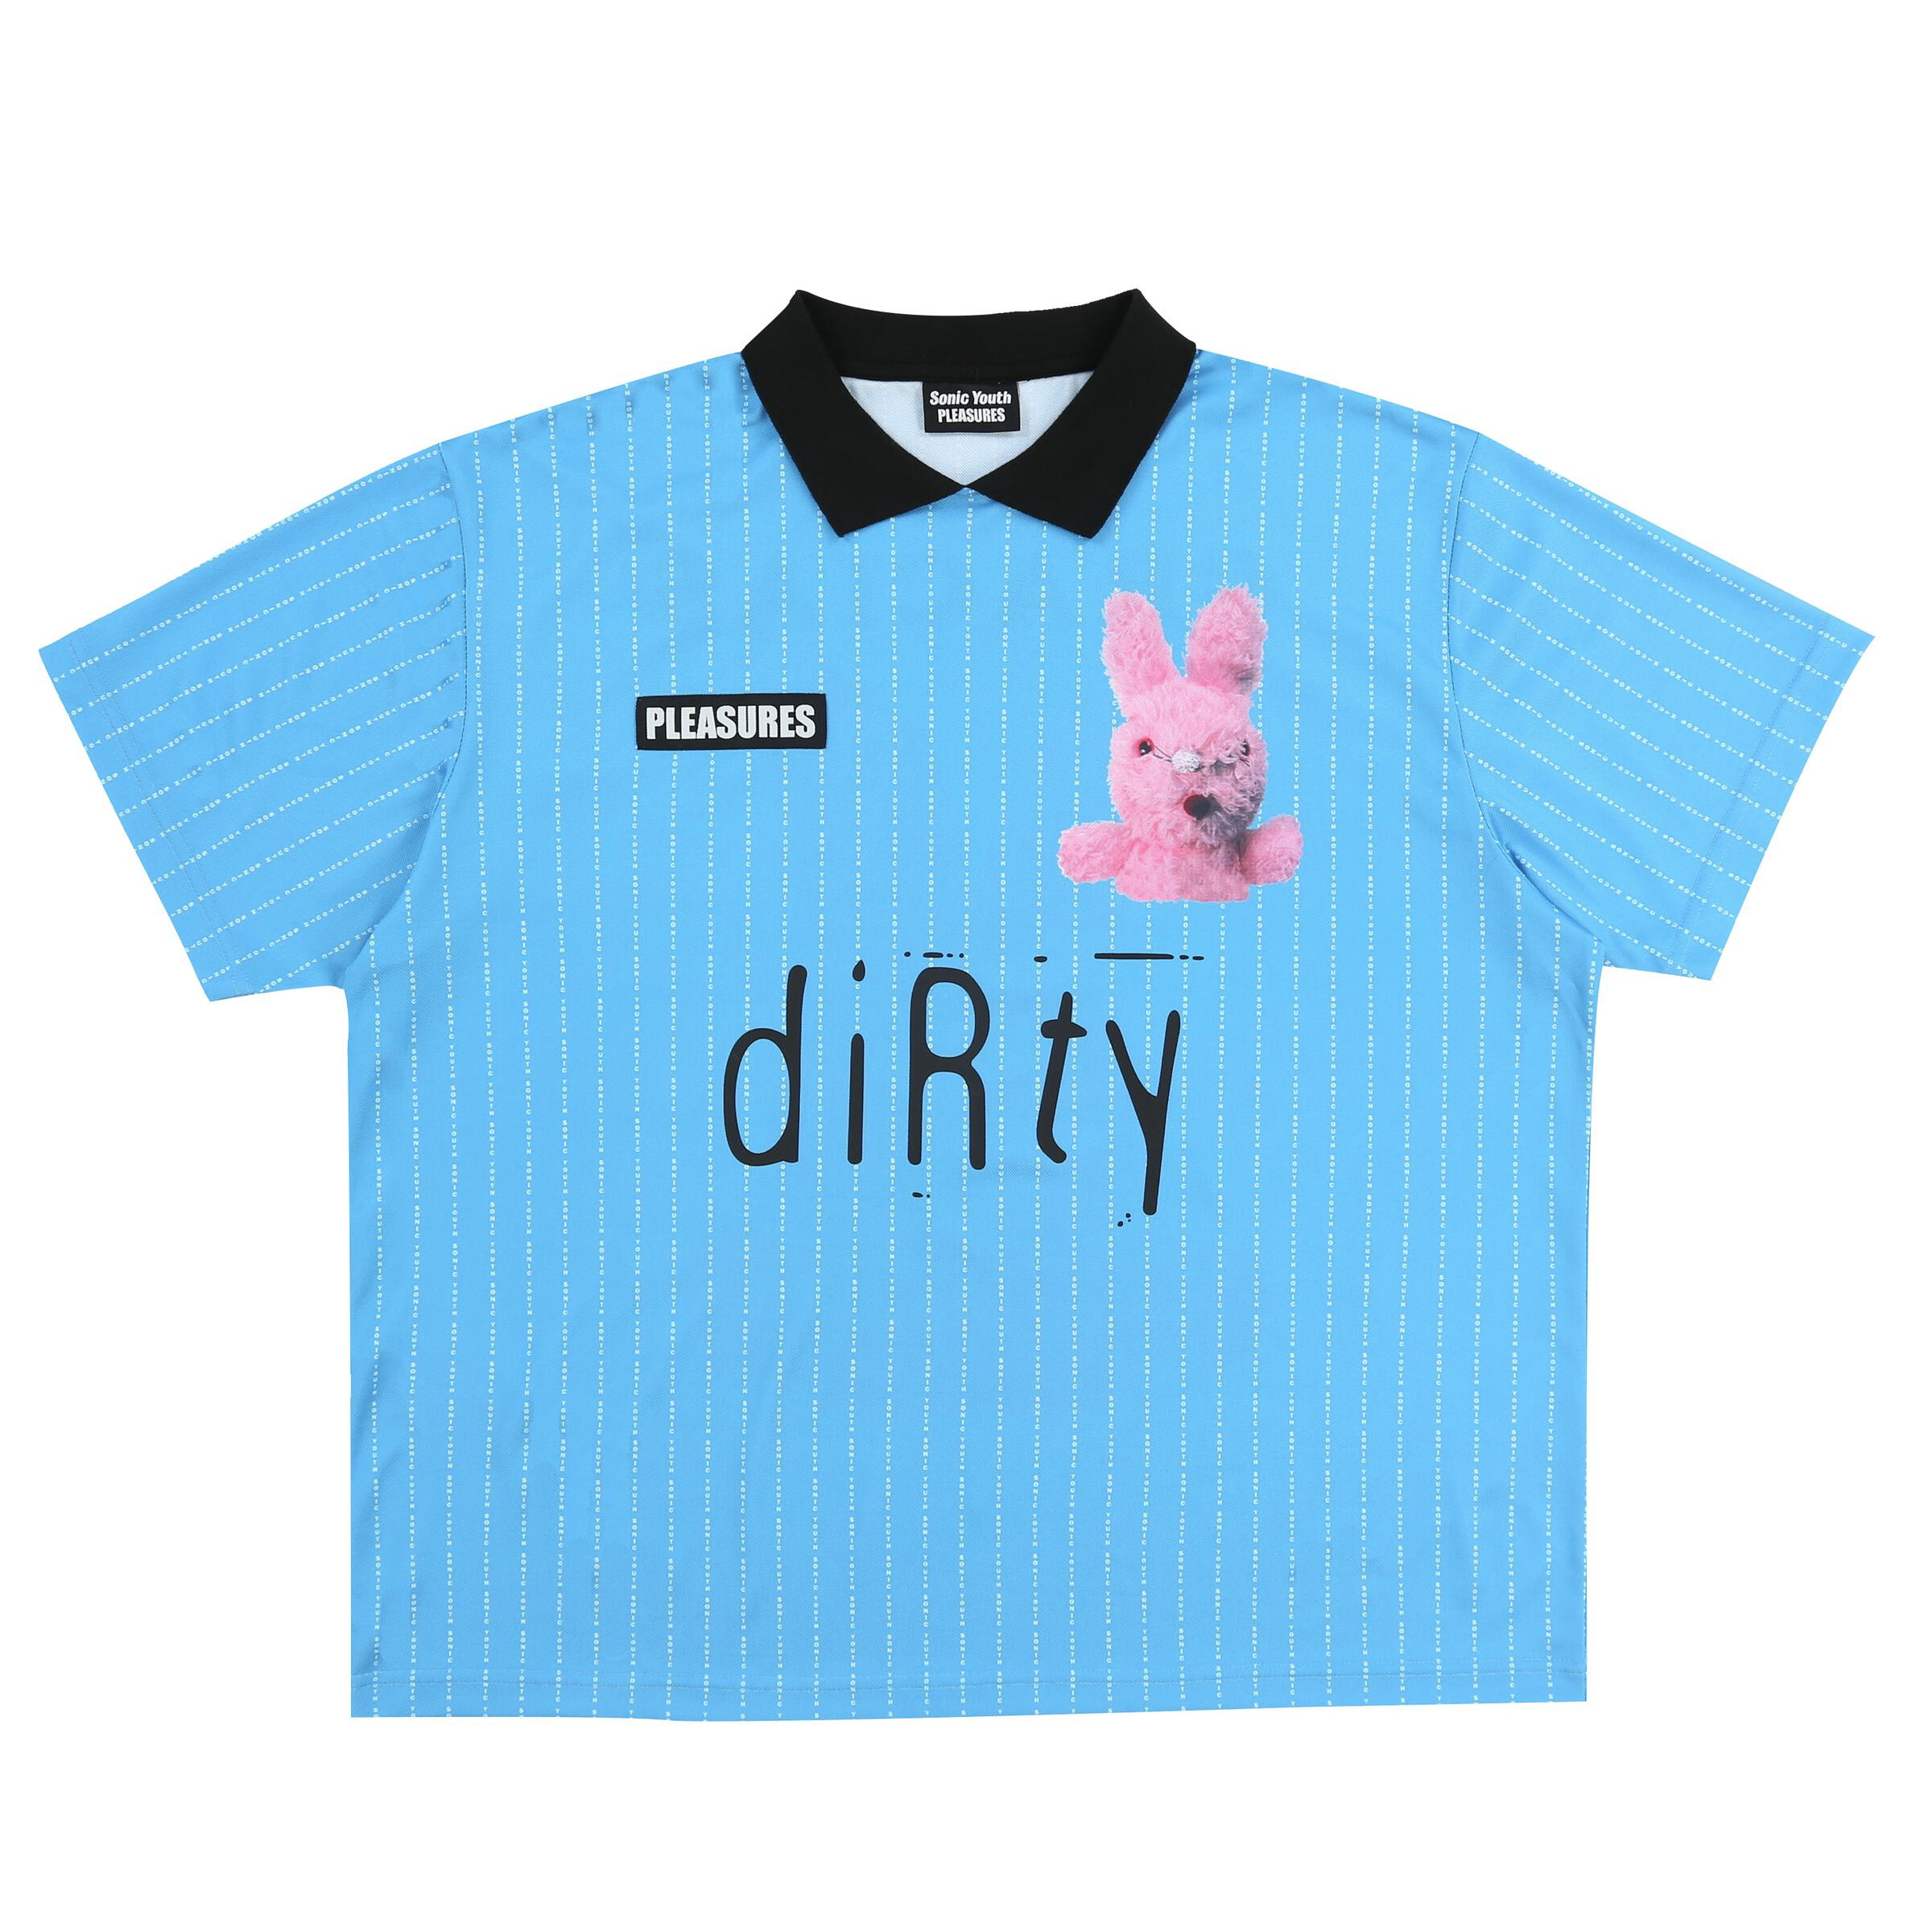 Immagine di Pleasures | Bunny Soccer Jersey